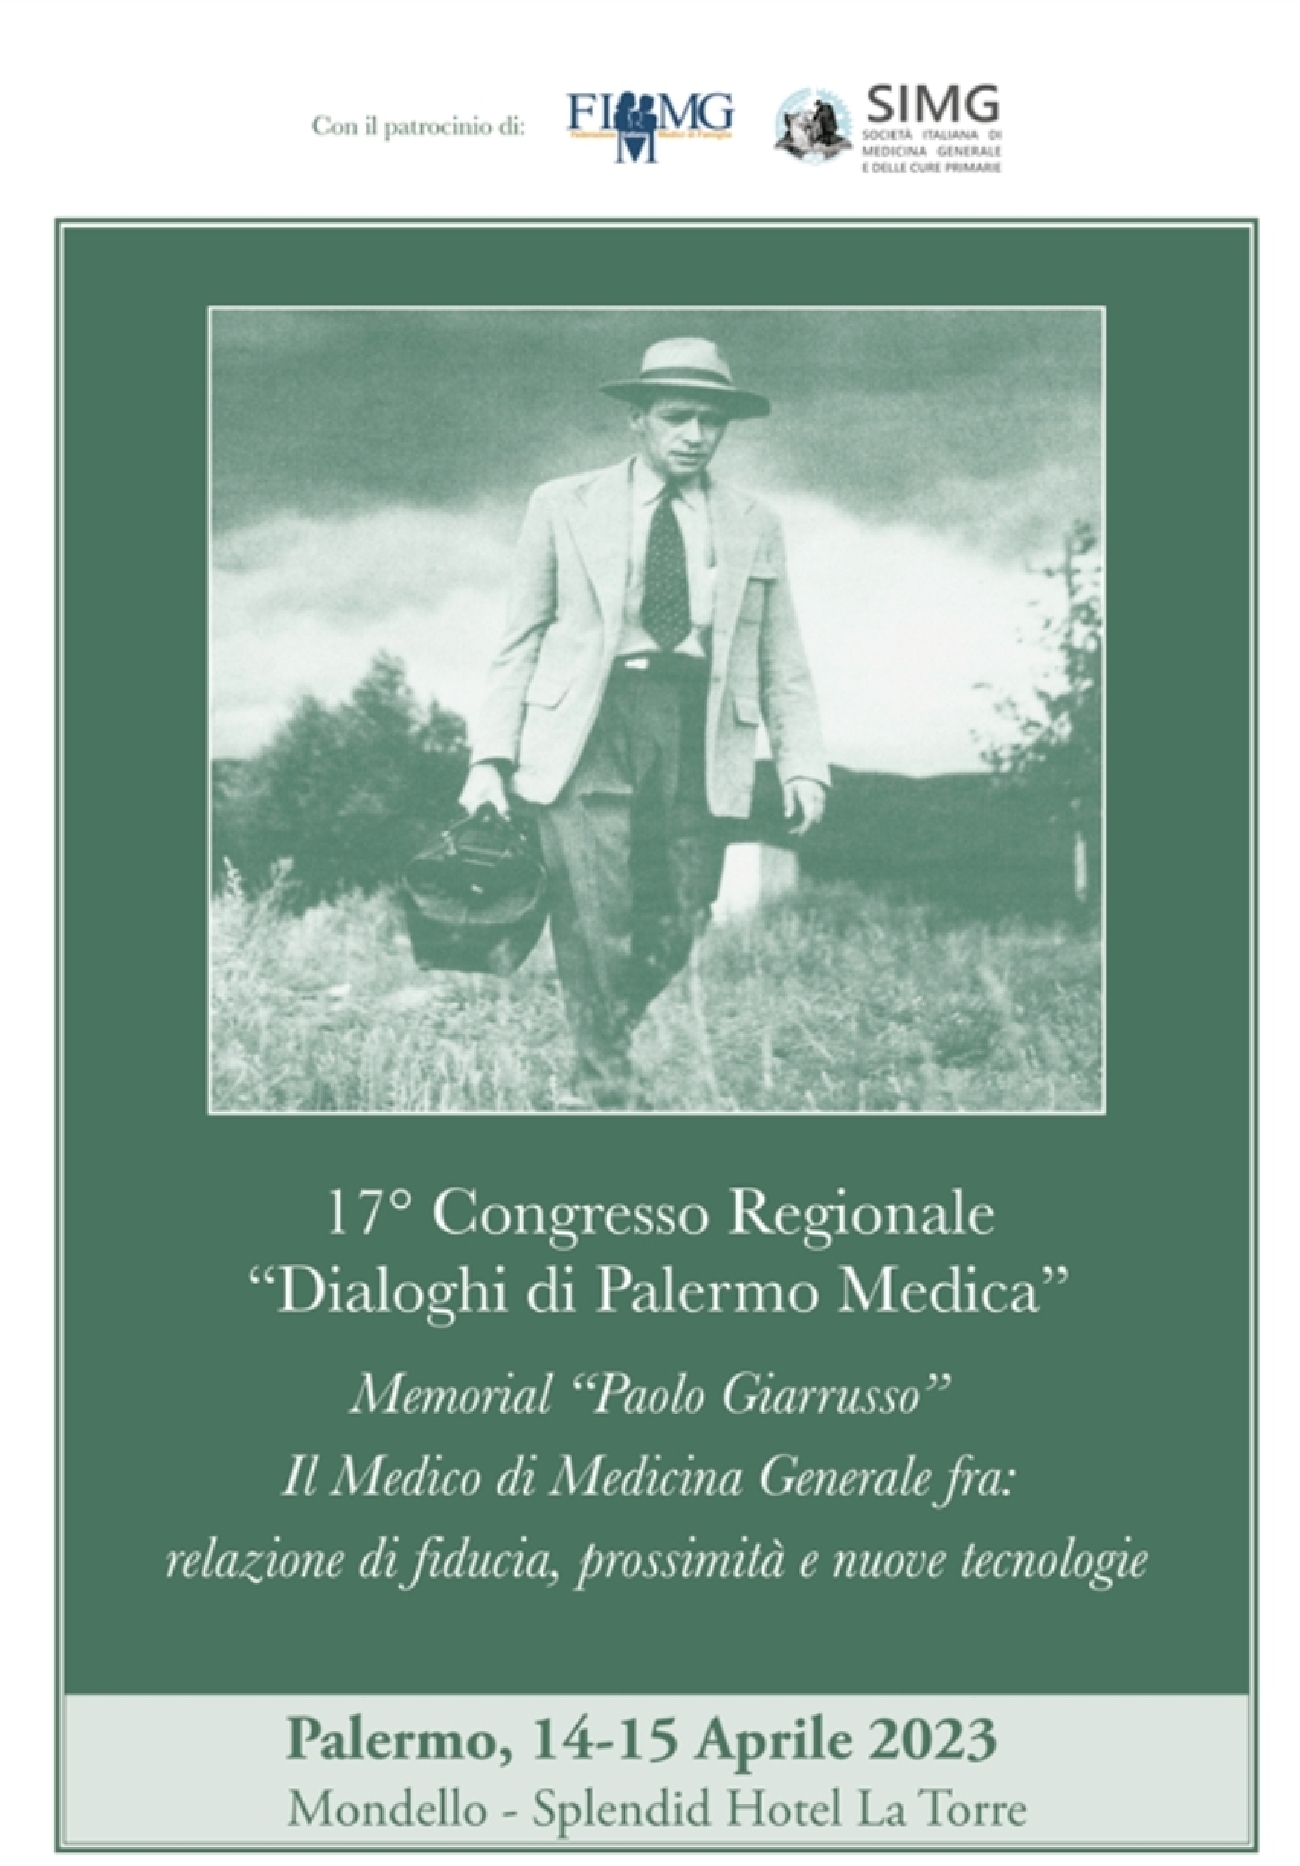 17° Congresso Regionale “Dialoghi di Palermo Medica”